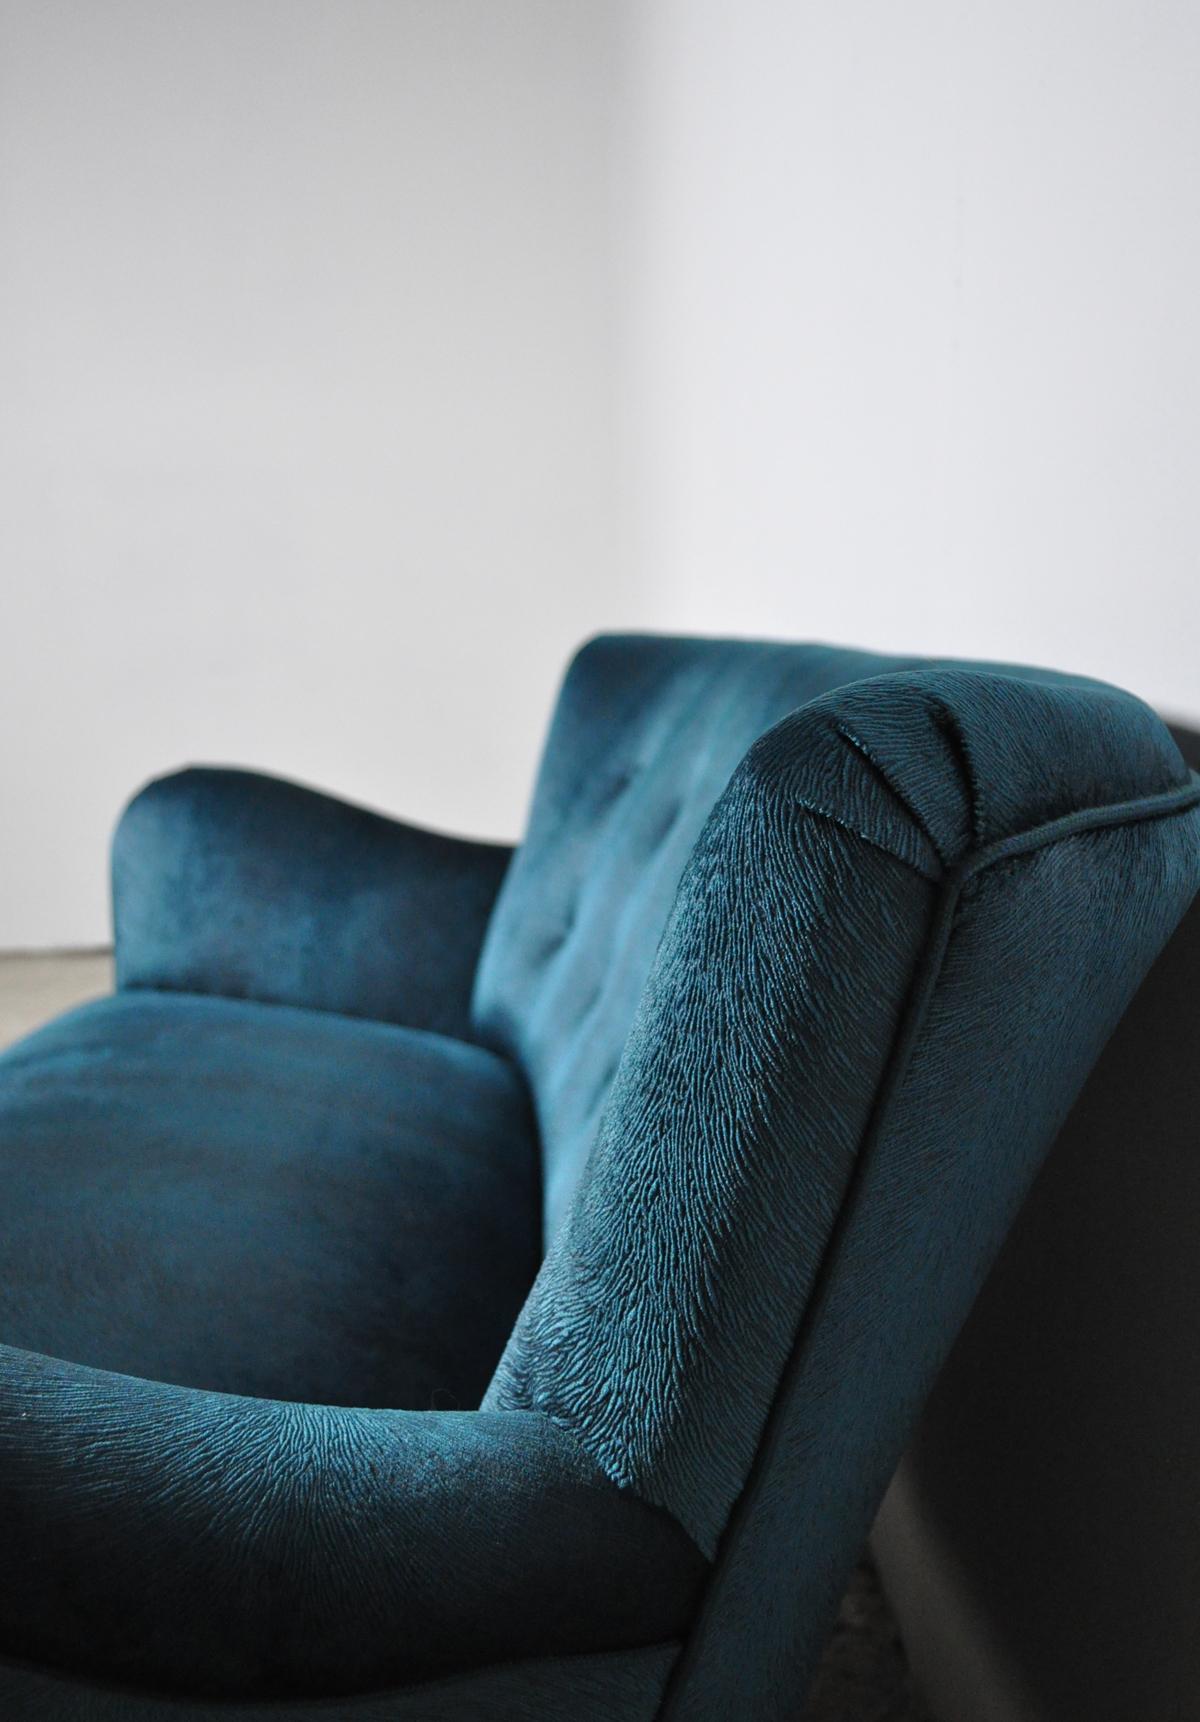 Danish Elegant Early Midcentury Curved Sofa in Blue Velvet New Upholstery For Sale